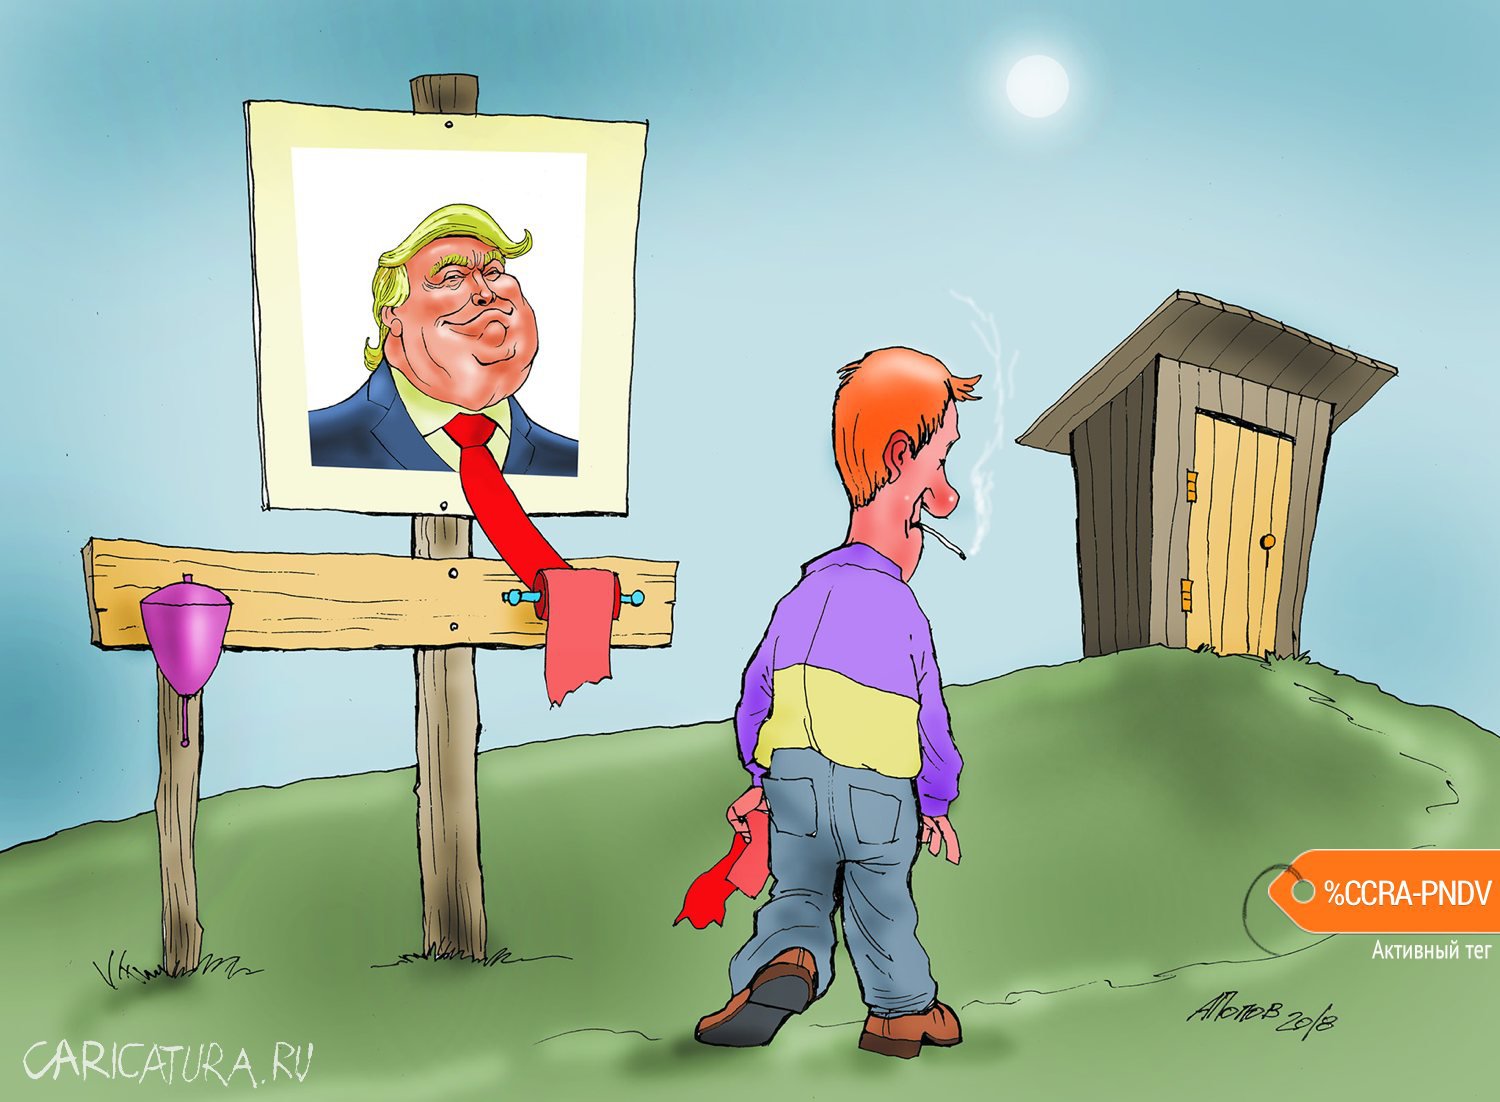 Карикатура "И не зарастет народная тропа!", Александр Попов